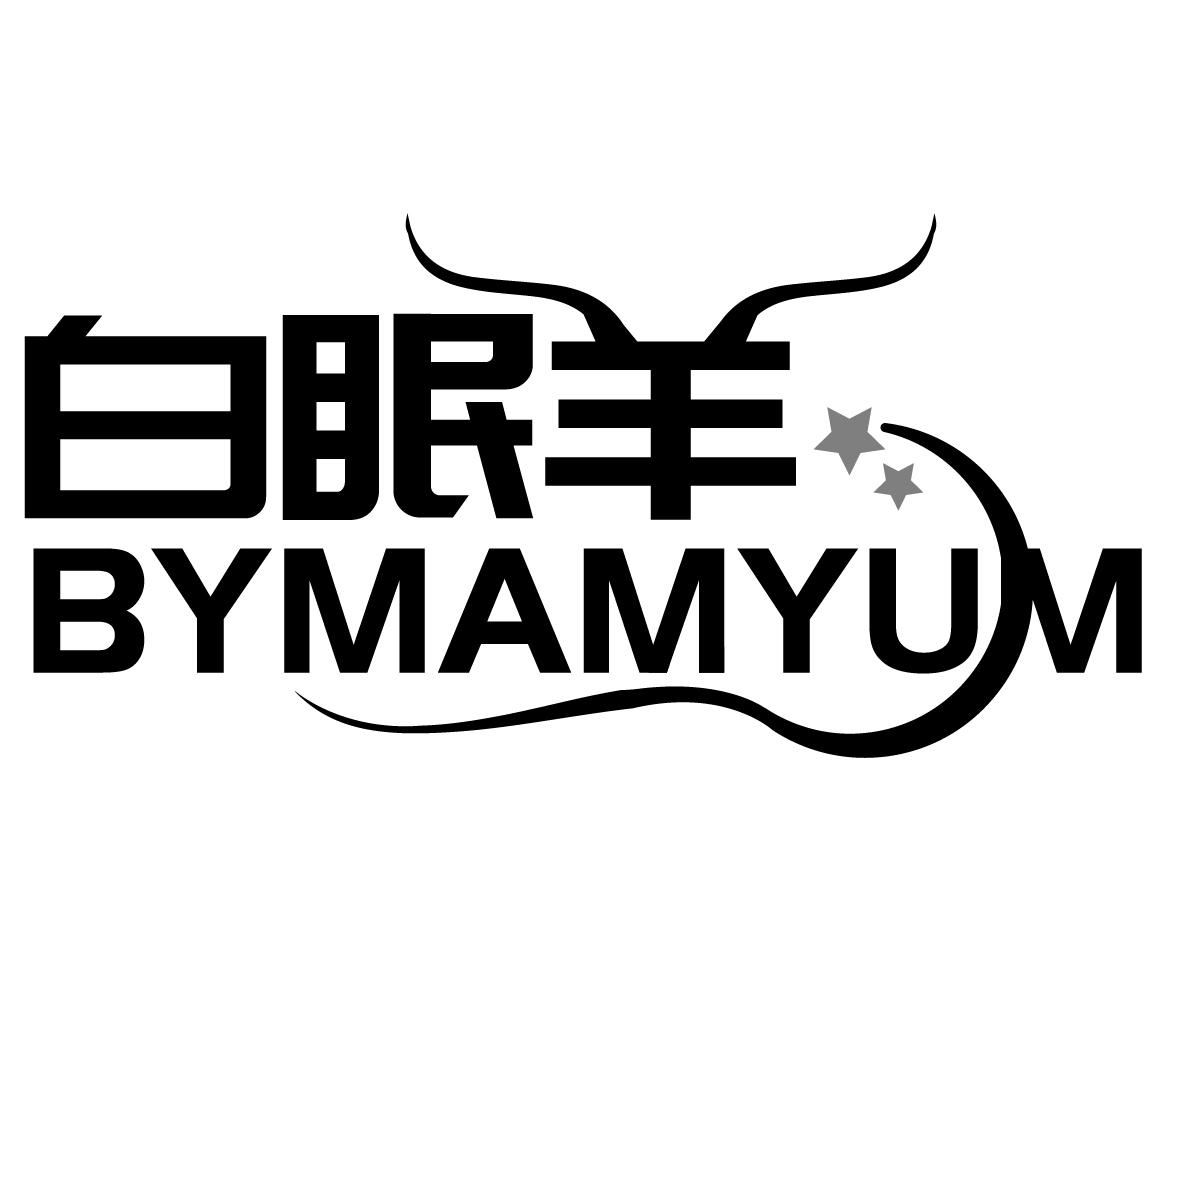  BYMAMYUM